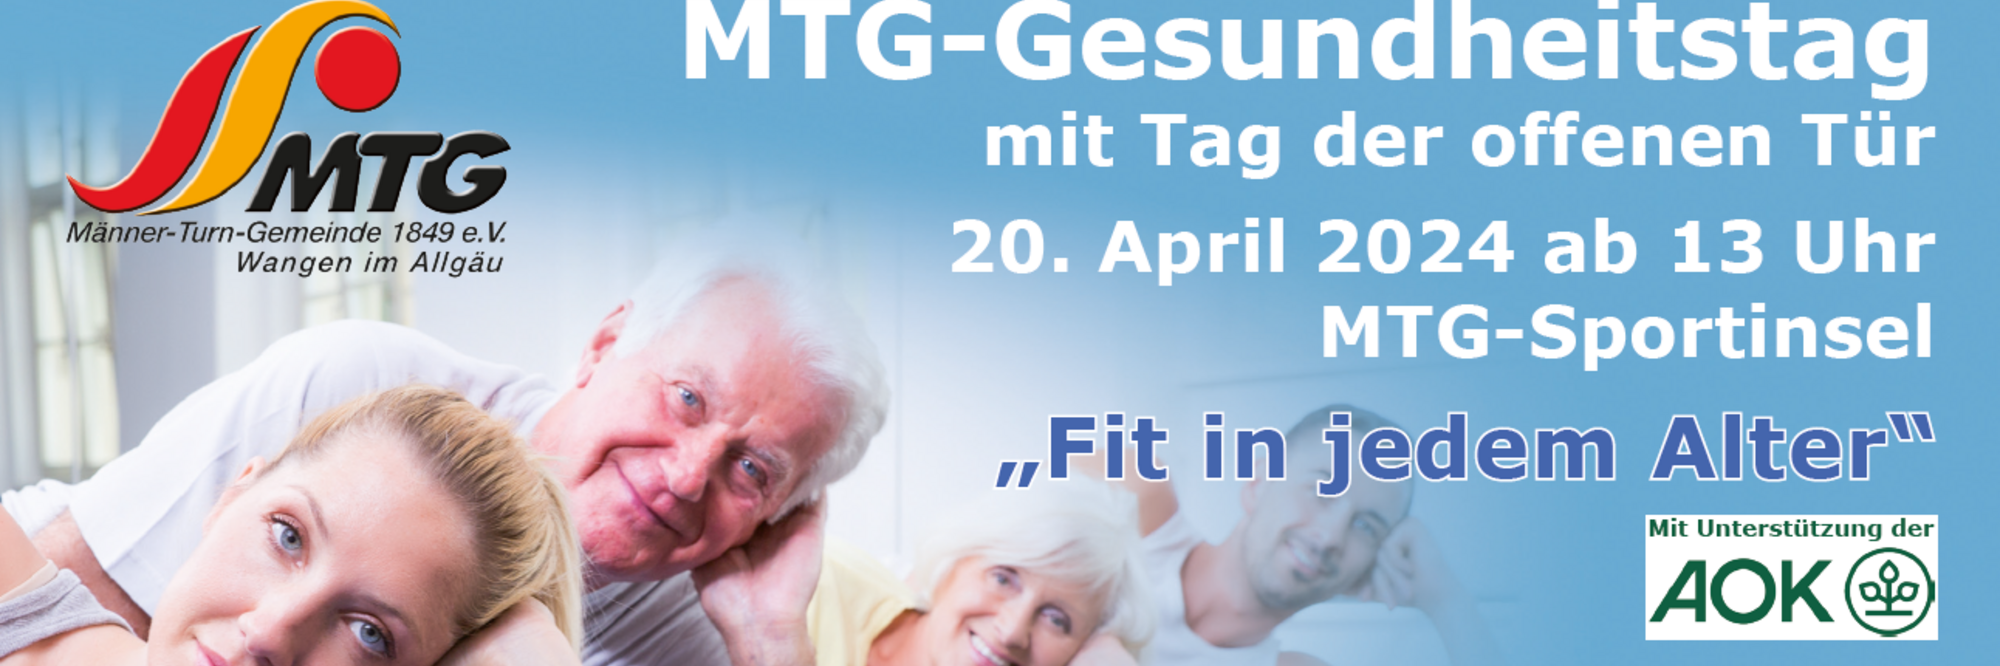 MTG-Gesundheitstag